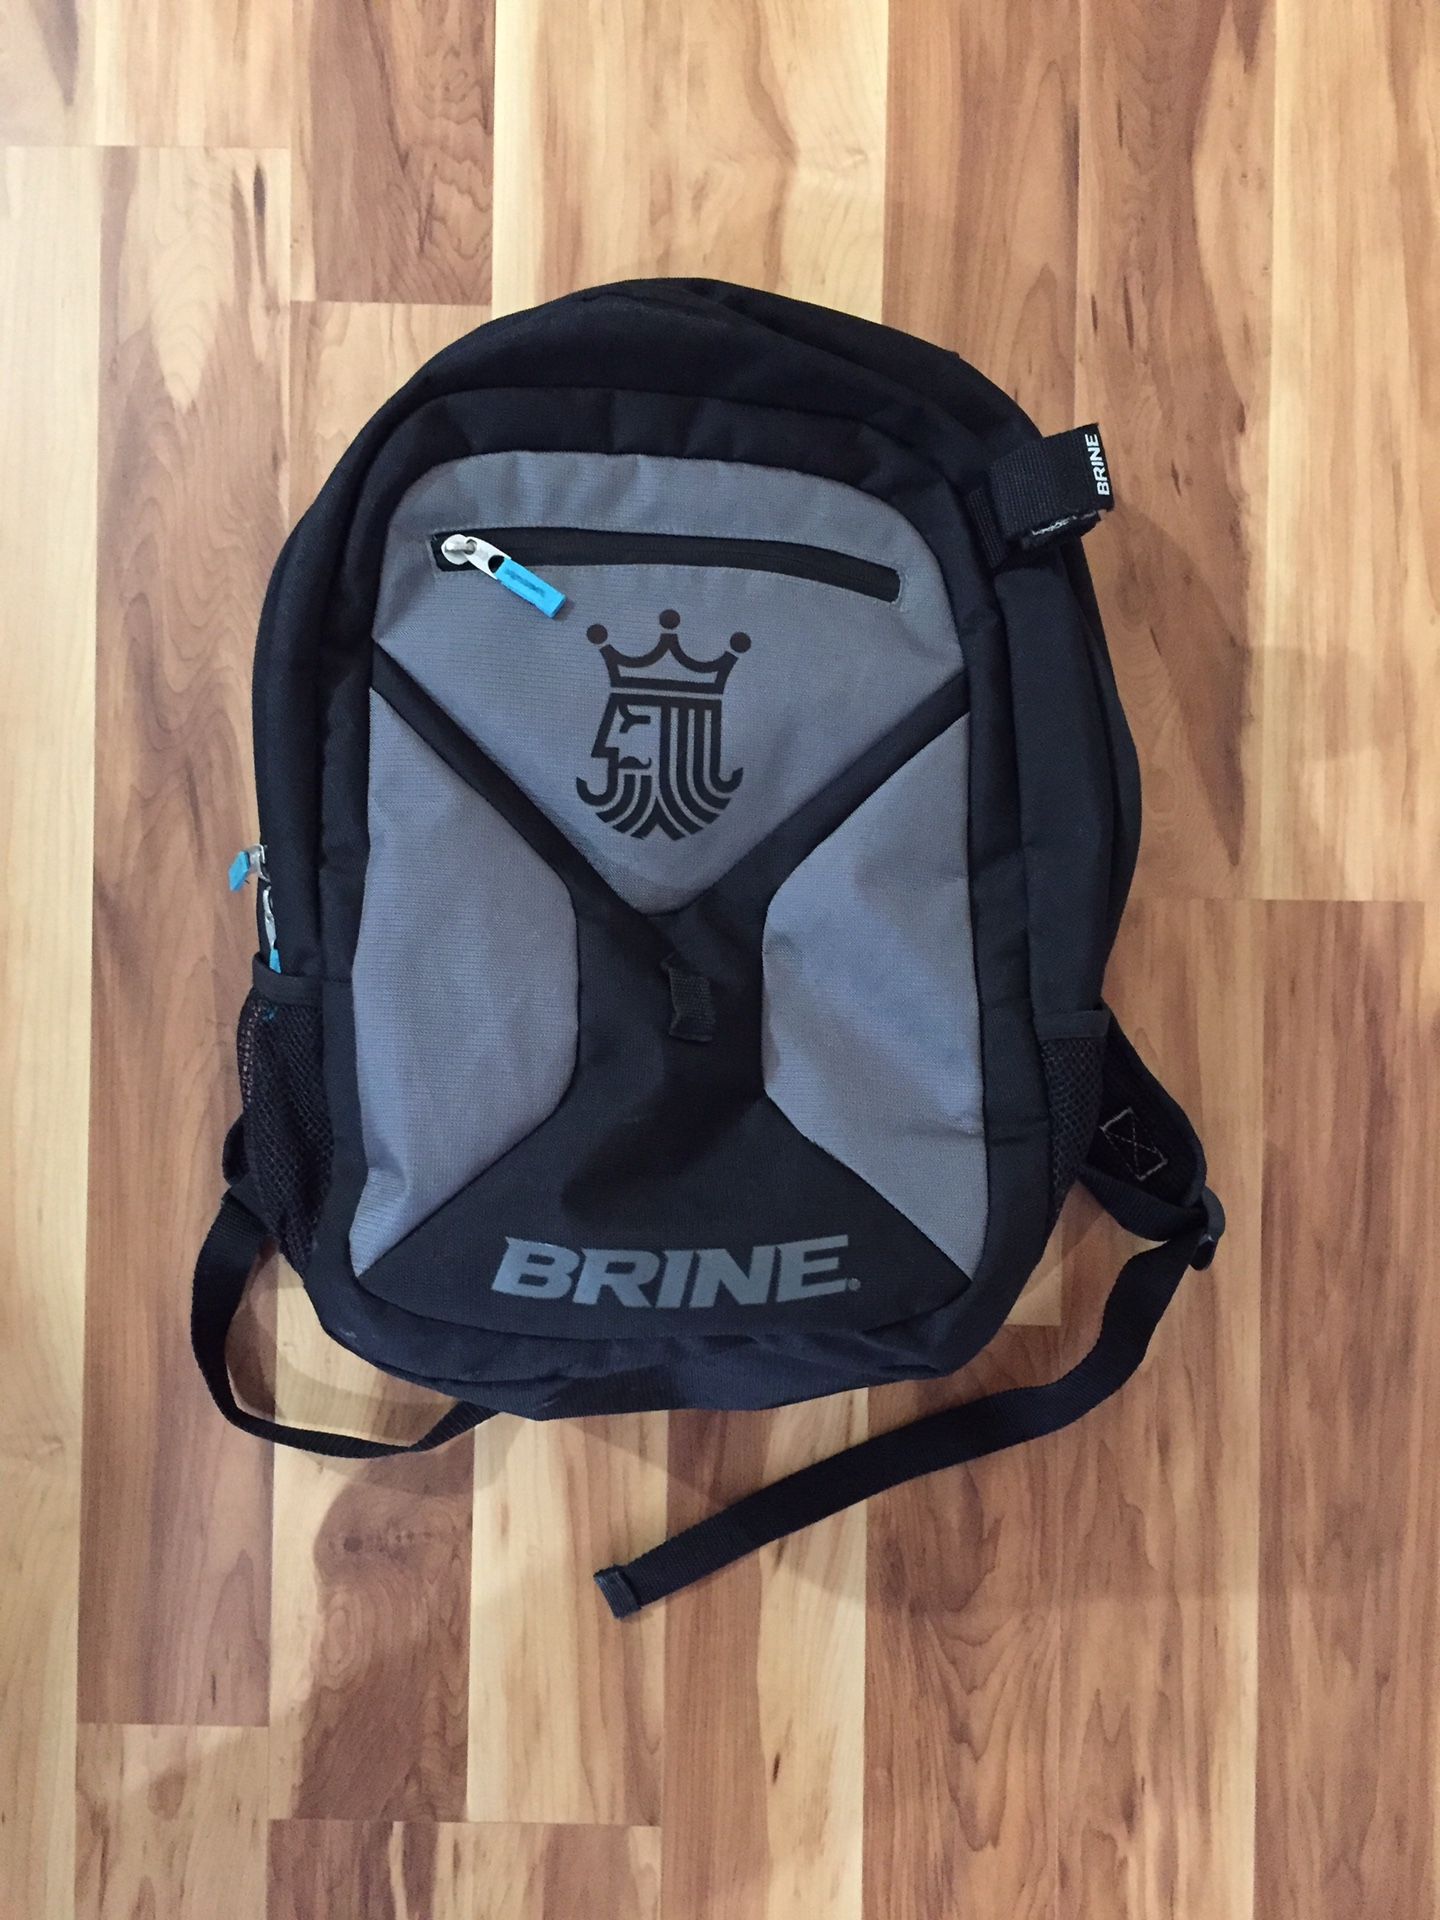 Brine Lacrosse Backpack